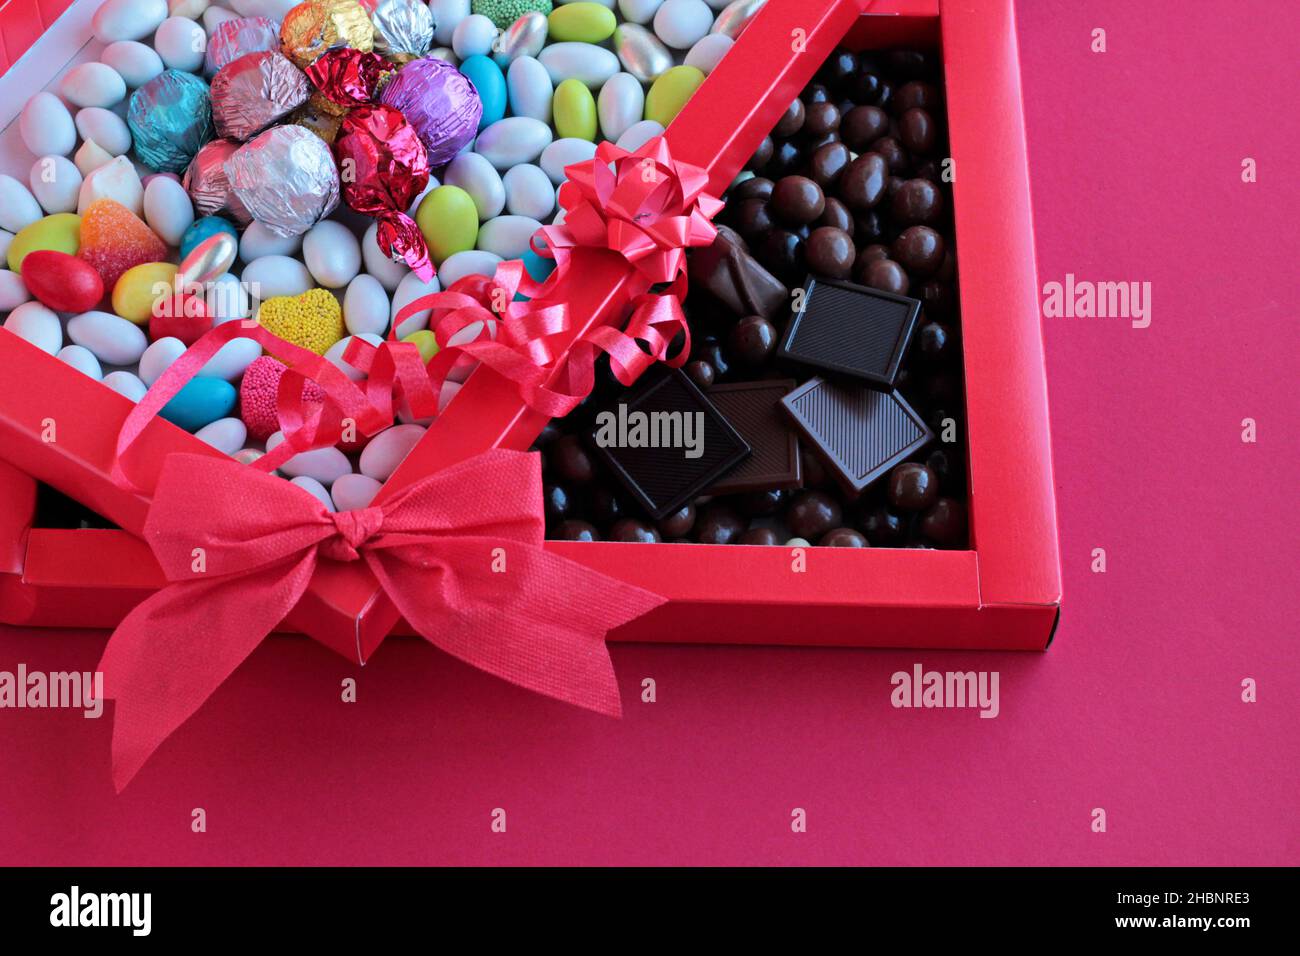 Bunte Mandel-Bonbons und Chocolate Madlen in der roten Pappschachtel.in zwei geteilt aussehend. Stockfoto